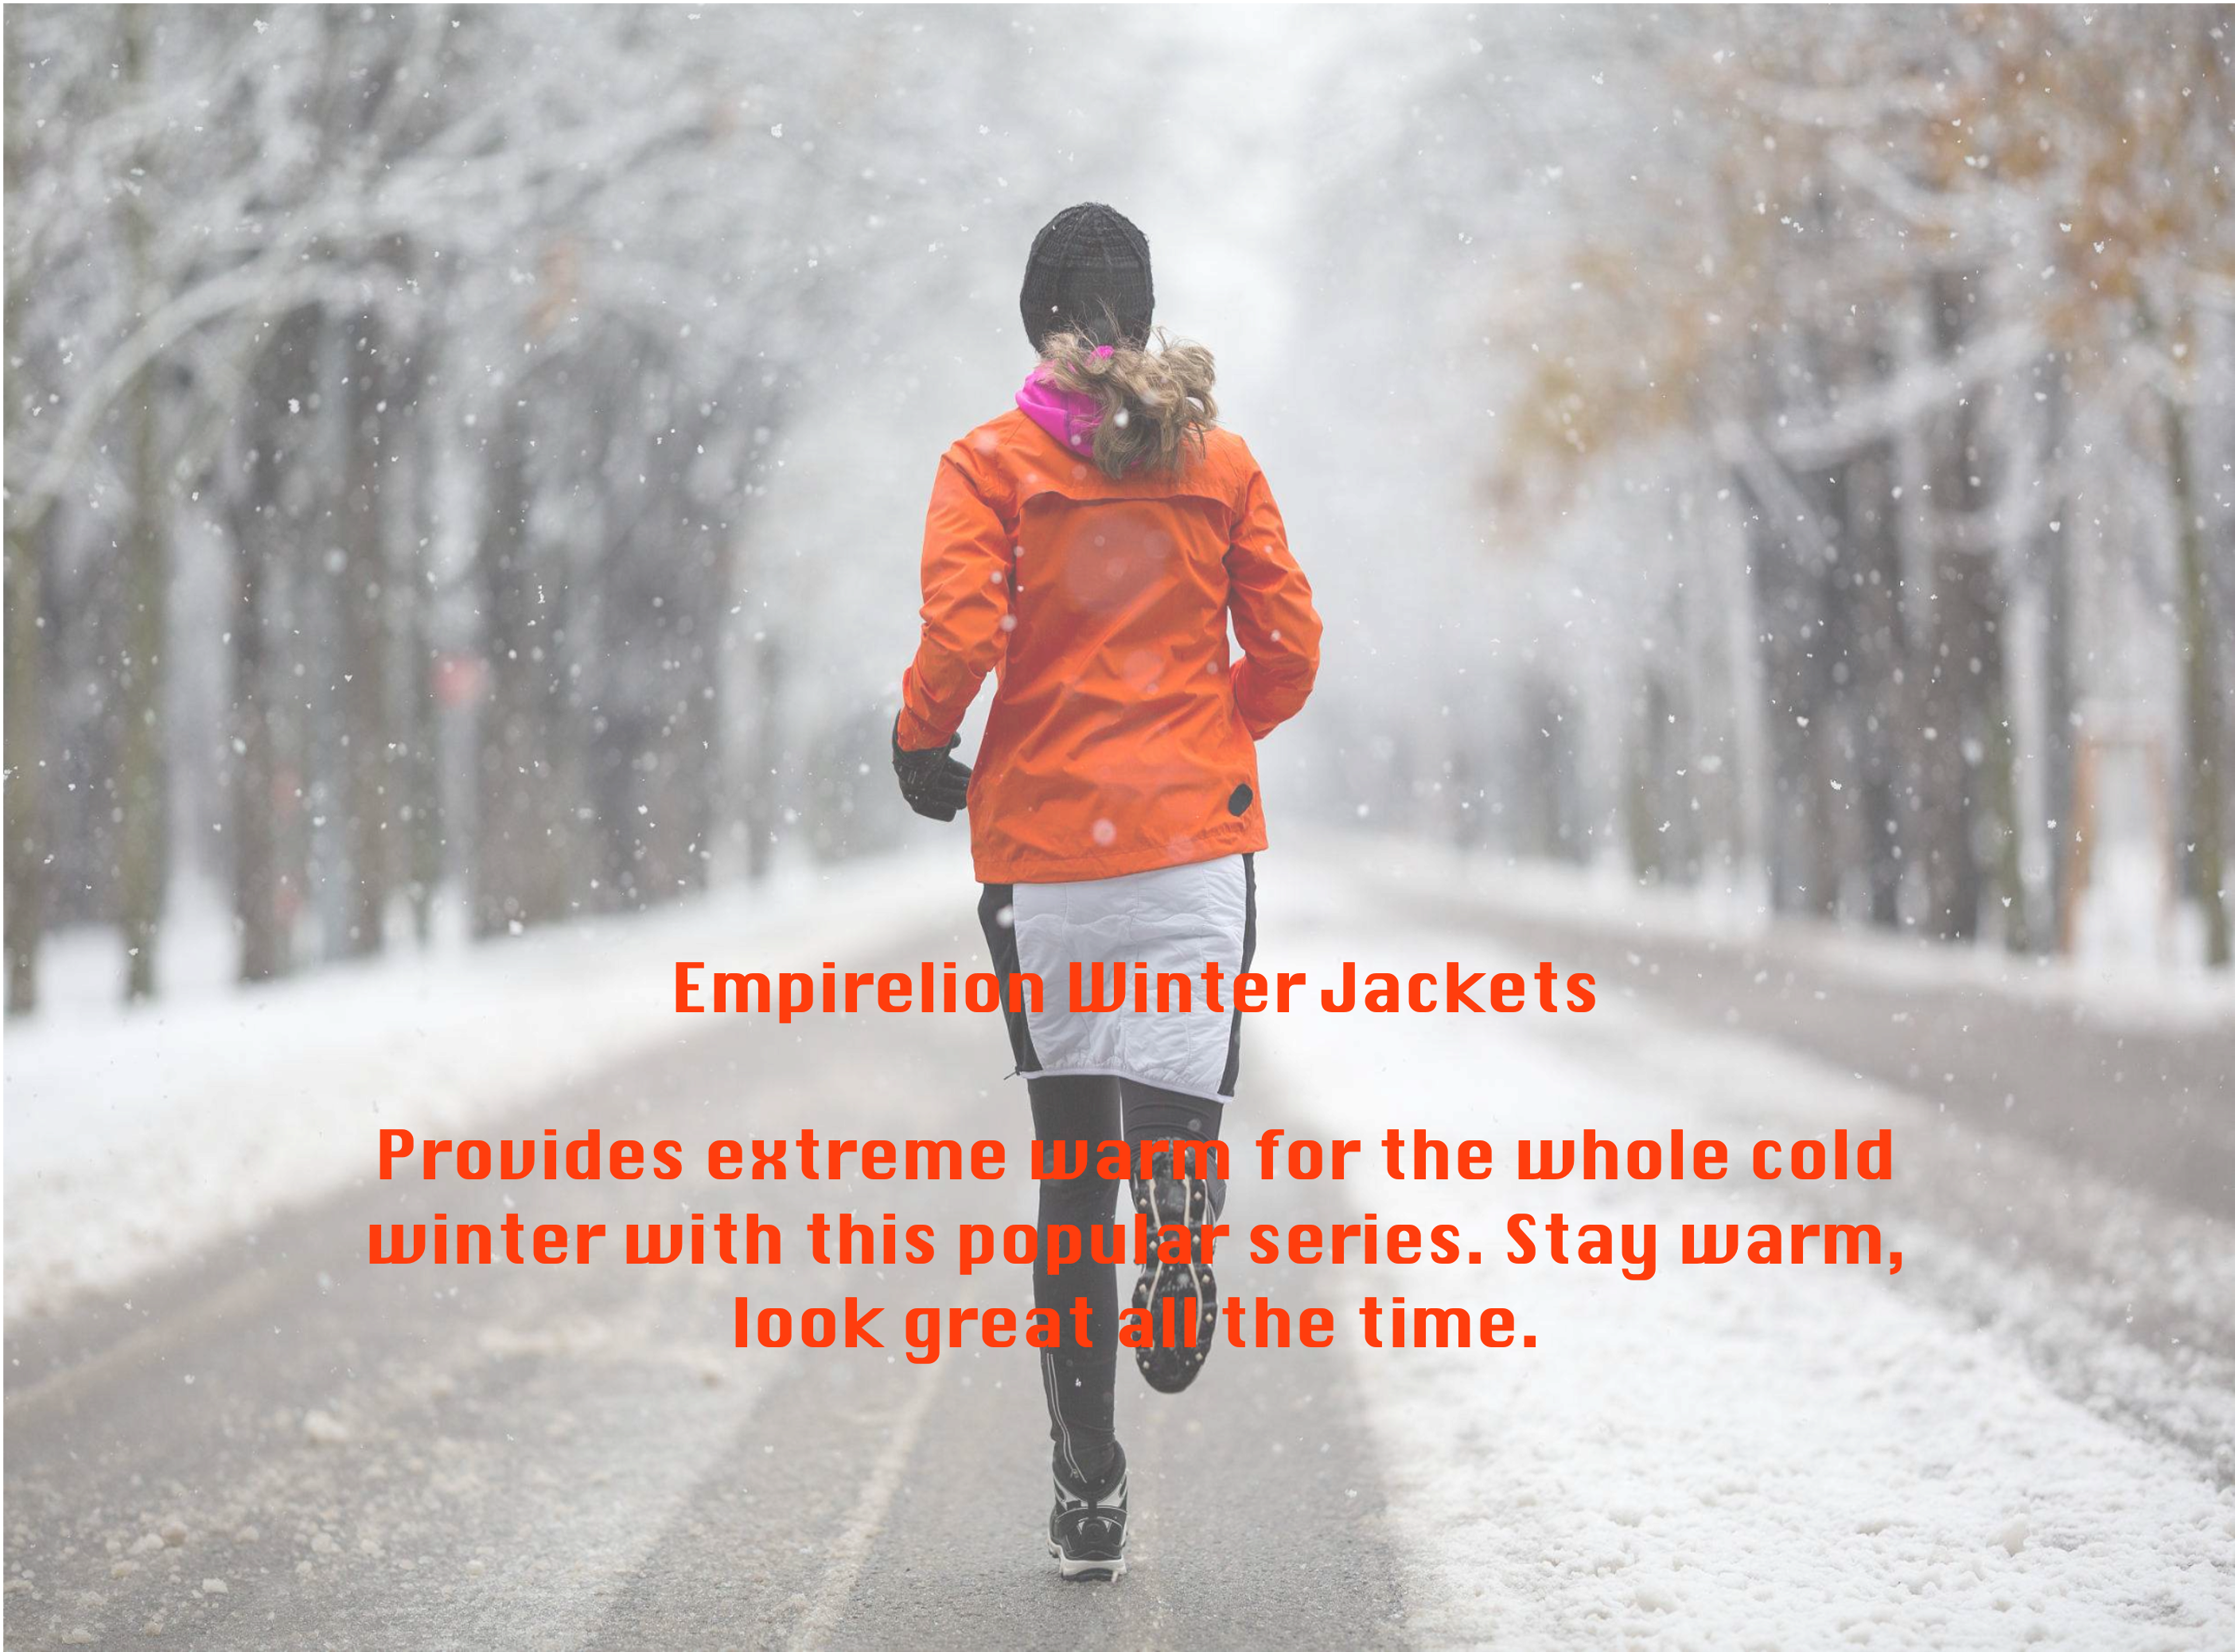 ¿A qué prestar atención al usar una chaqueta de invierno?